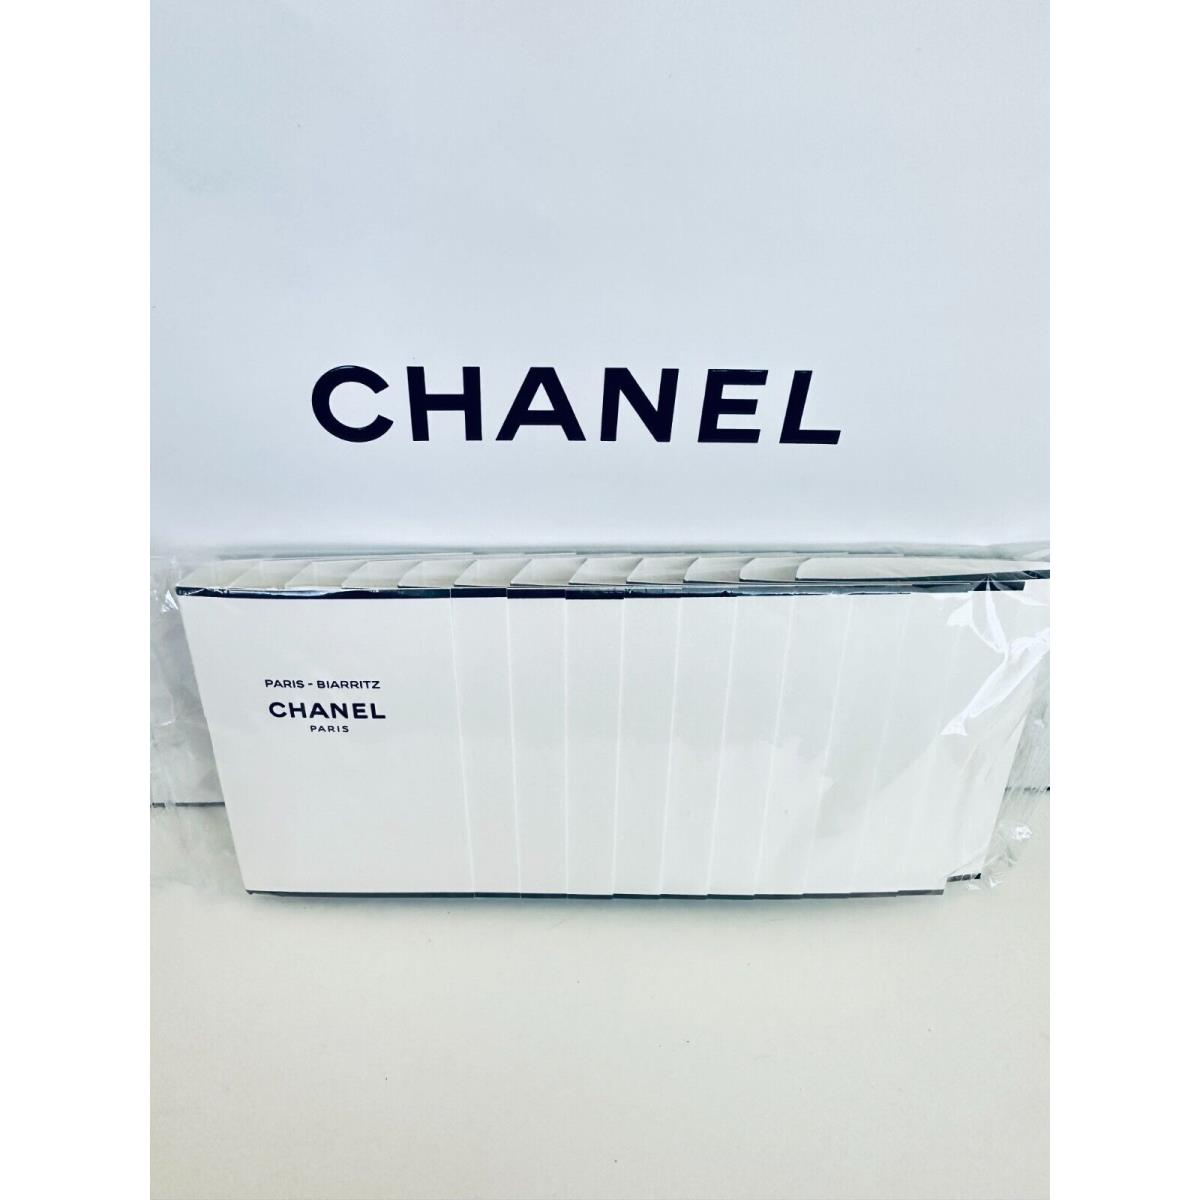 Chanel Les Eaux de Chanel Paris Sample Size 1.5ml-12pcs/pack Choose Your Scent Chanel Paris Biarritz